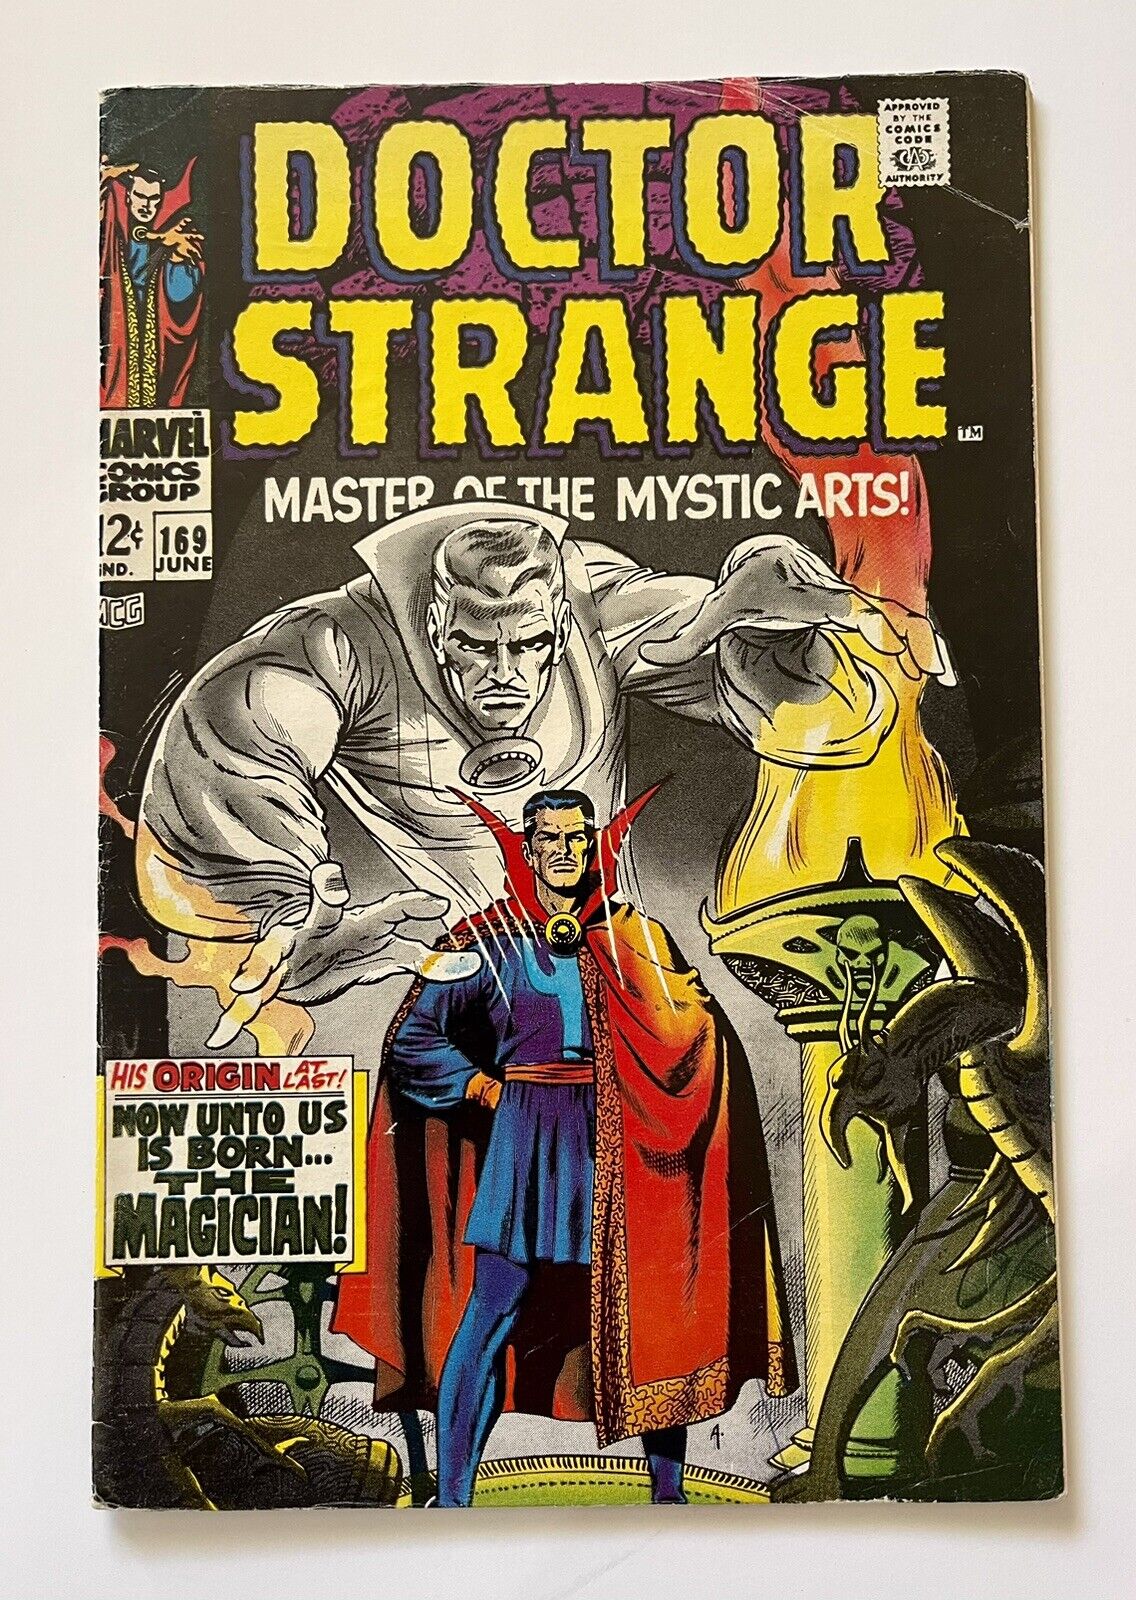 Doctor Strange #169: Marvel Comics 1968 Key issue, Orgin story